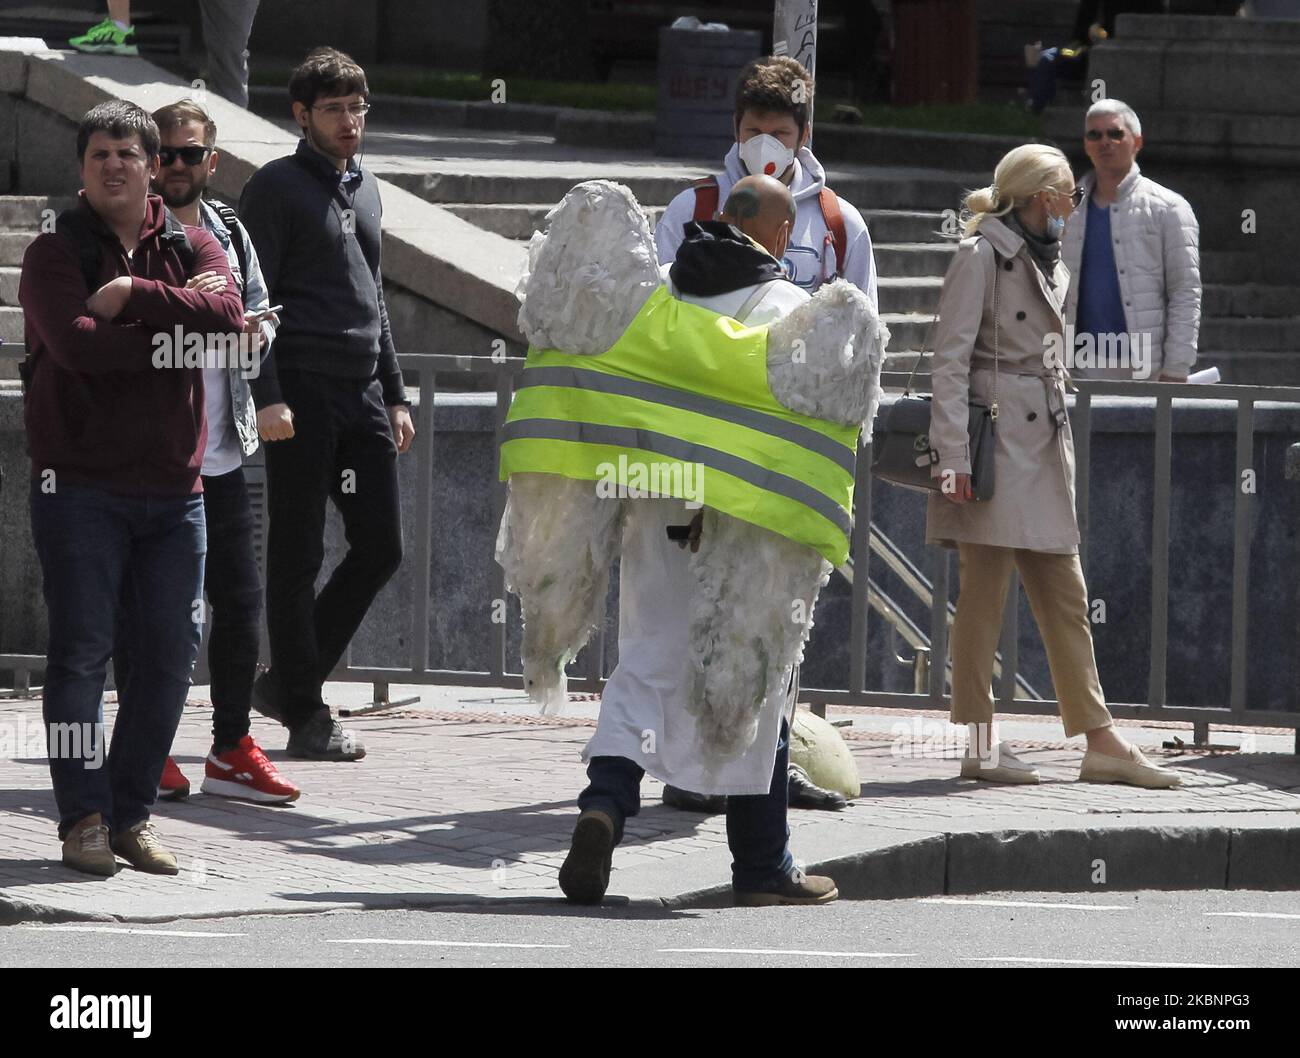 Un homme portant un masque protecteur au milieu de l'épidémie de coronavirus Covid-19 marche vêtu d'un costume dans une rue à Kiev, en Ukraine, le 13 mai 2020. Au 13 mai en Ukraine, 16 425 cas confirmés en laboratoire de coronavirus COVID-19, dont 439 mortels, selon le site Internet du ministère ukrainien de la Santé. (Photo par STR/NurPhoto) Banque D'Images